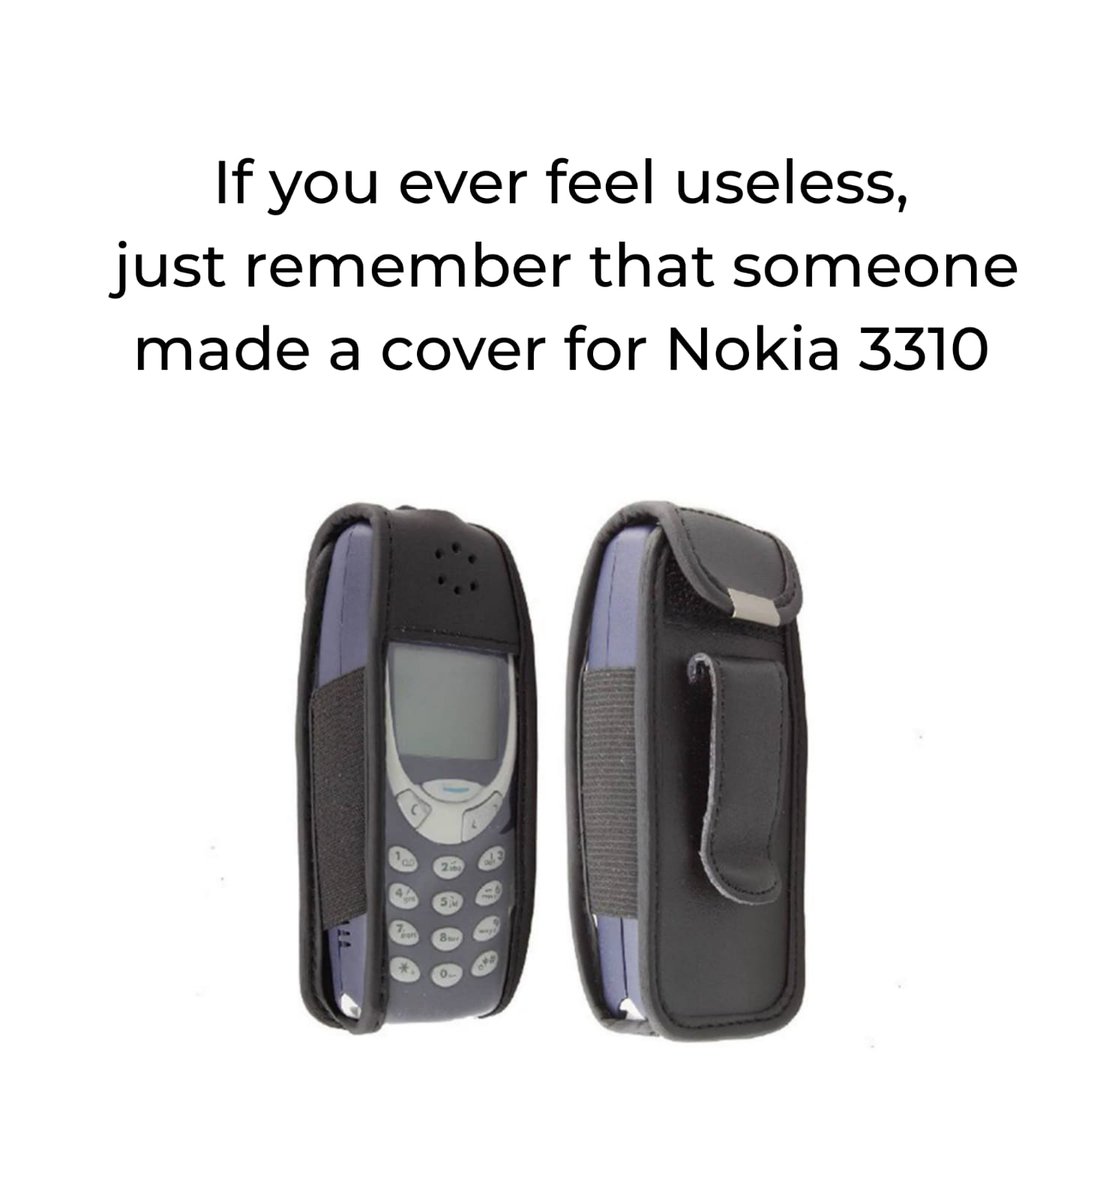 Nokia 3310 #Nokia3310